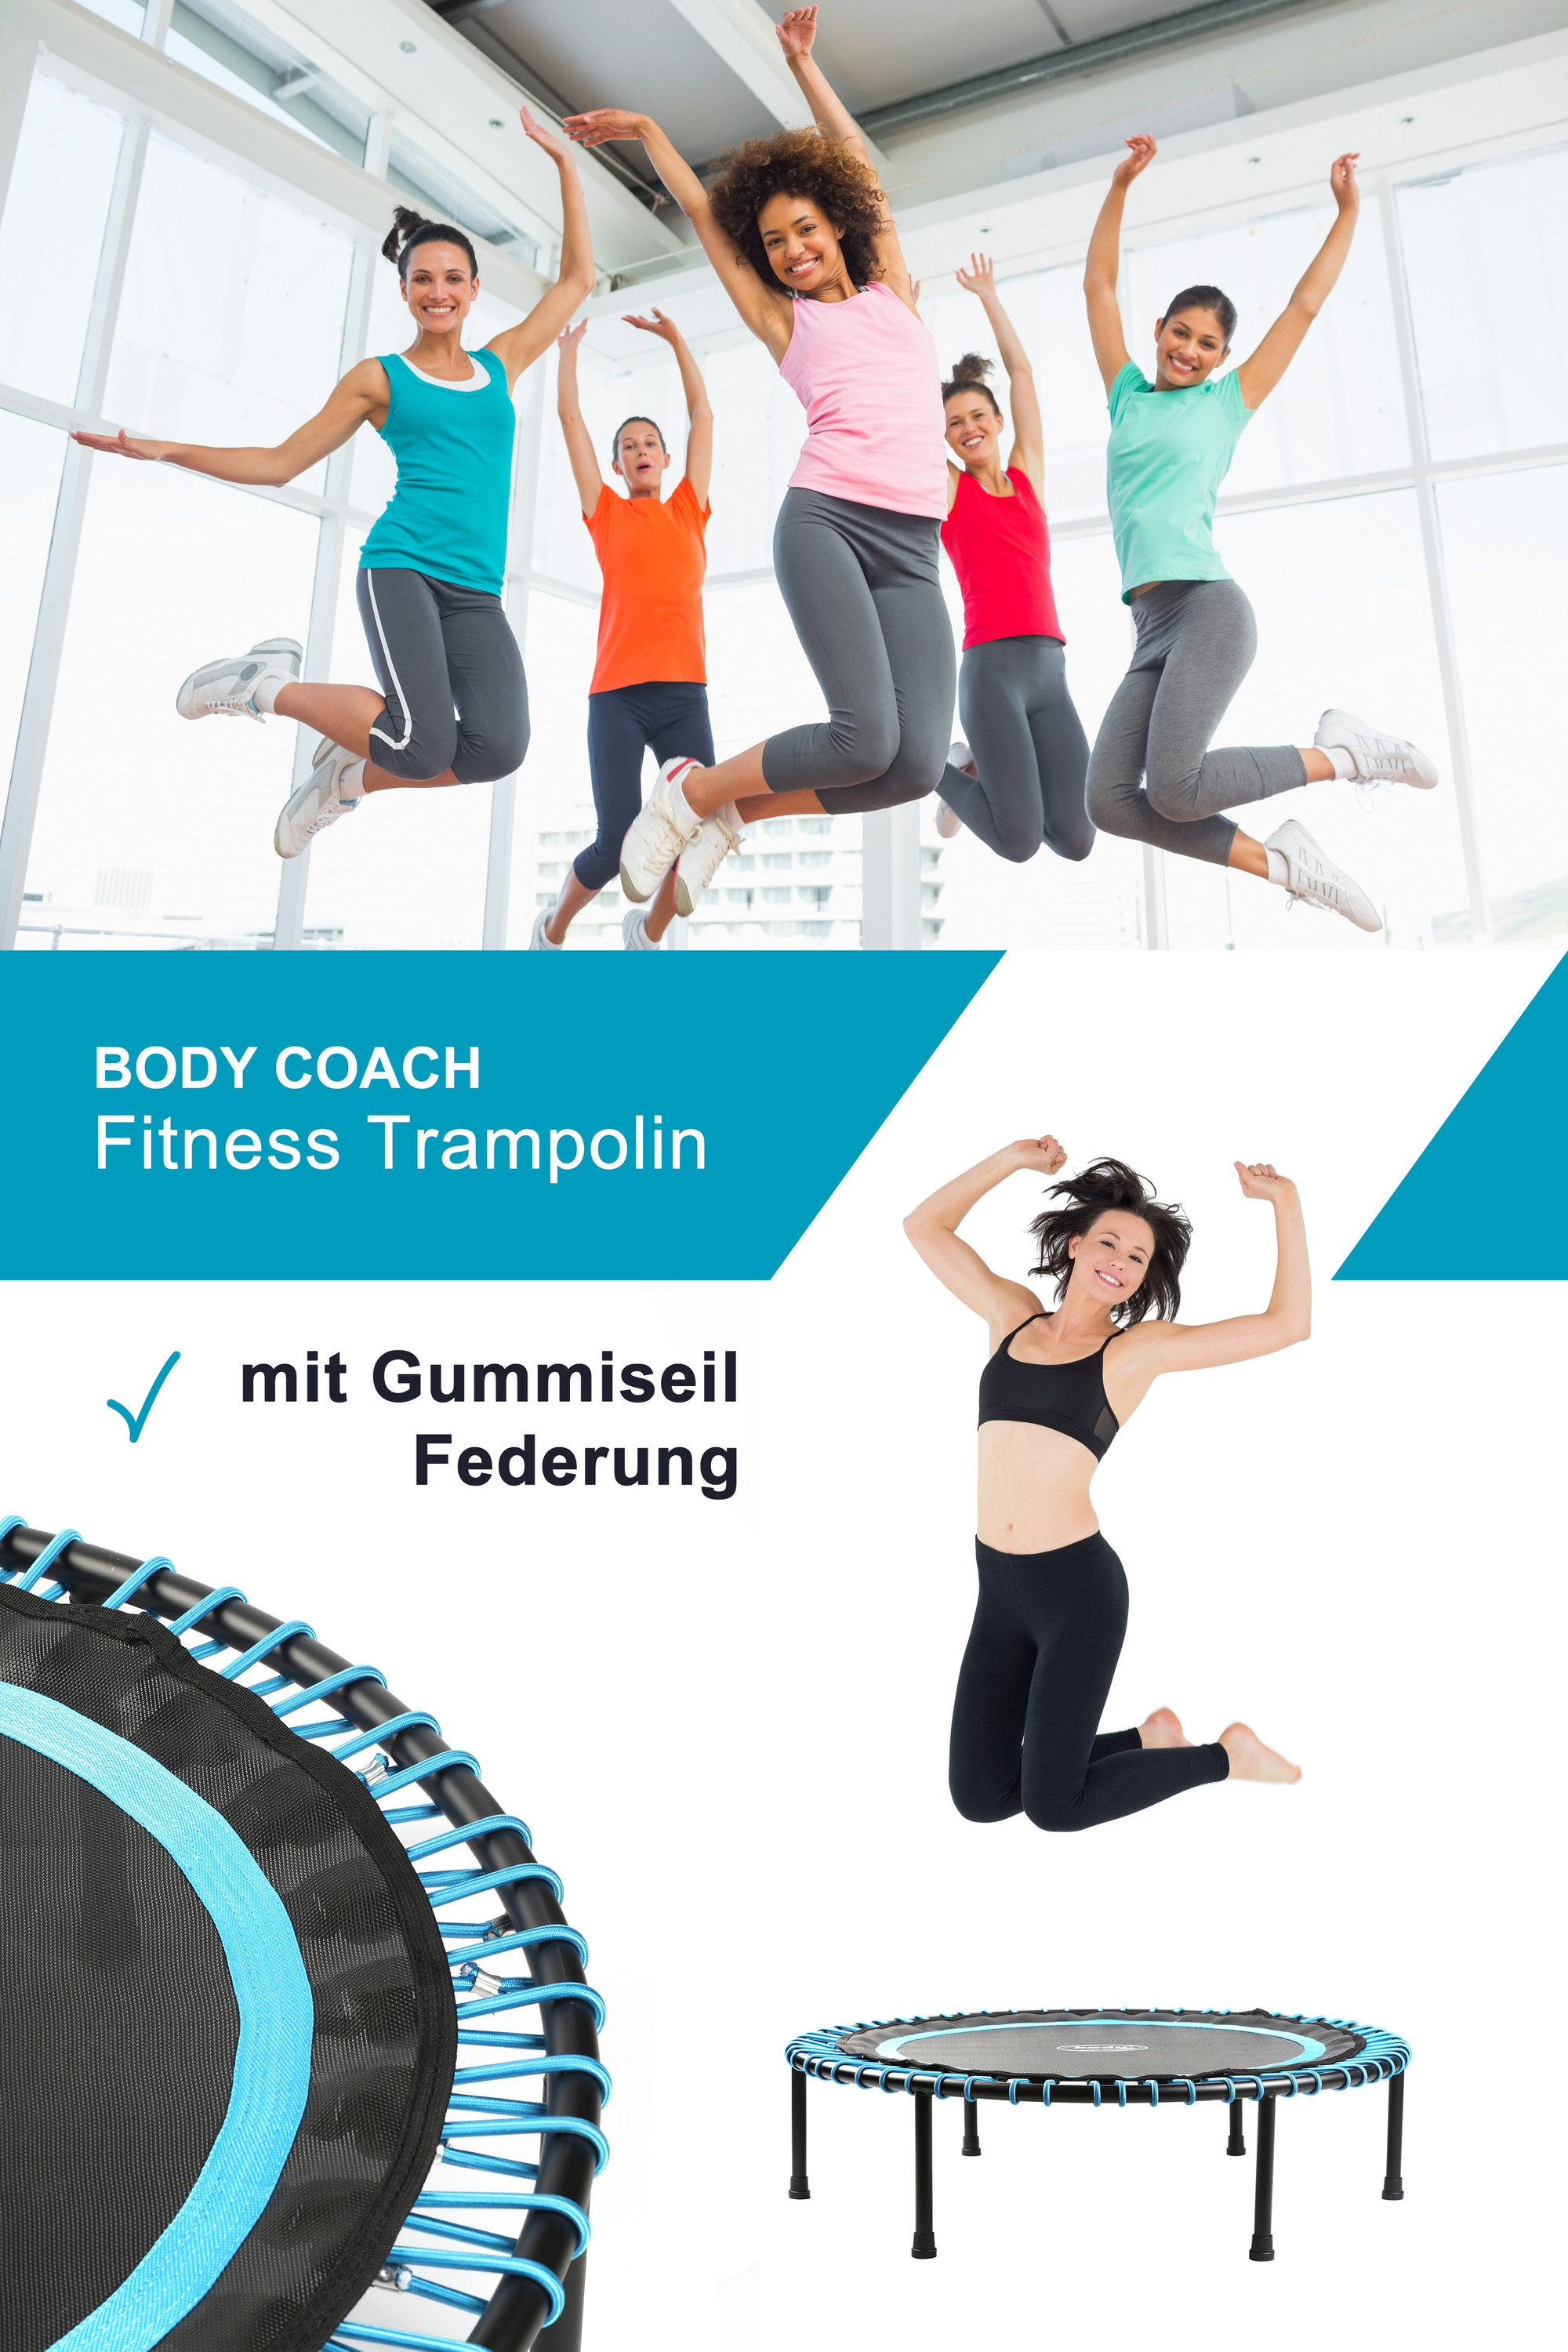 Body Coach Fitness-Trampolin 102cm rund leise Gummiseil-Federung bis 100kg  | Norma24